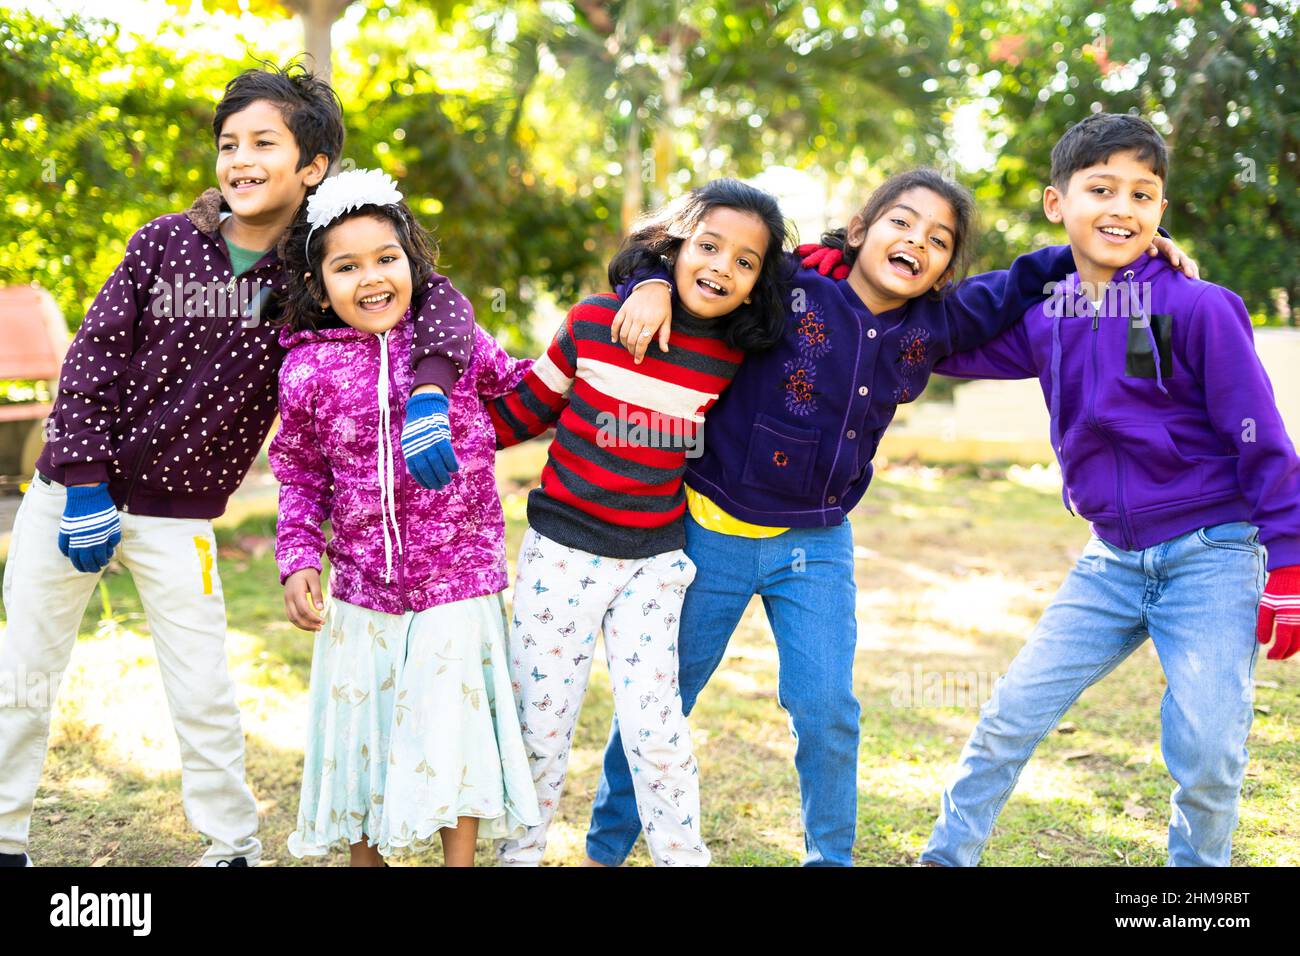 bambini adolescenti indiani che si divertono o trascorrono del tempo con gli amici ballando al parco - concetto di celebrazione, picnic, vacanza invernale e attività ricreative Foto Stock